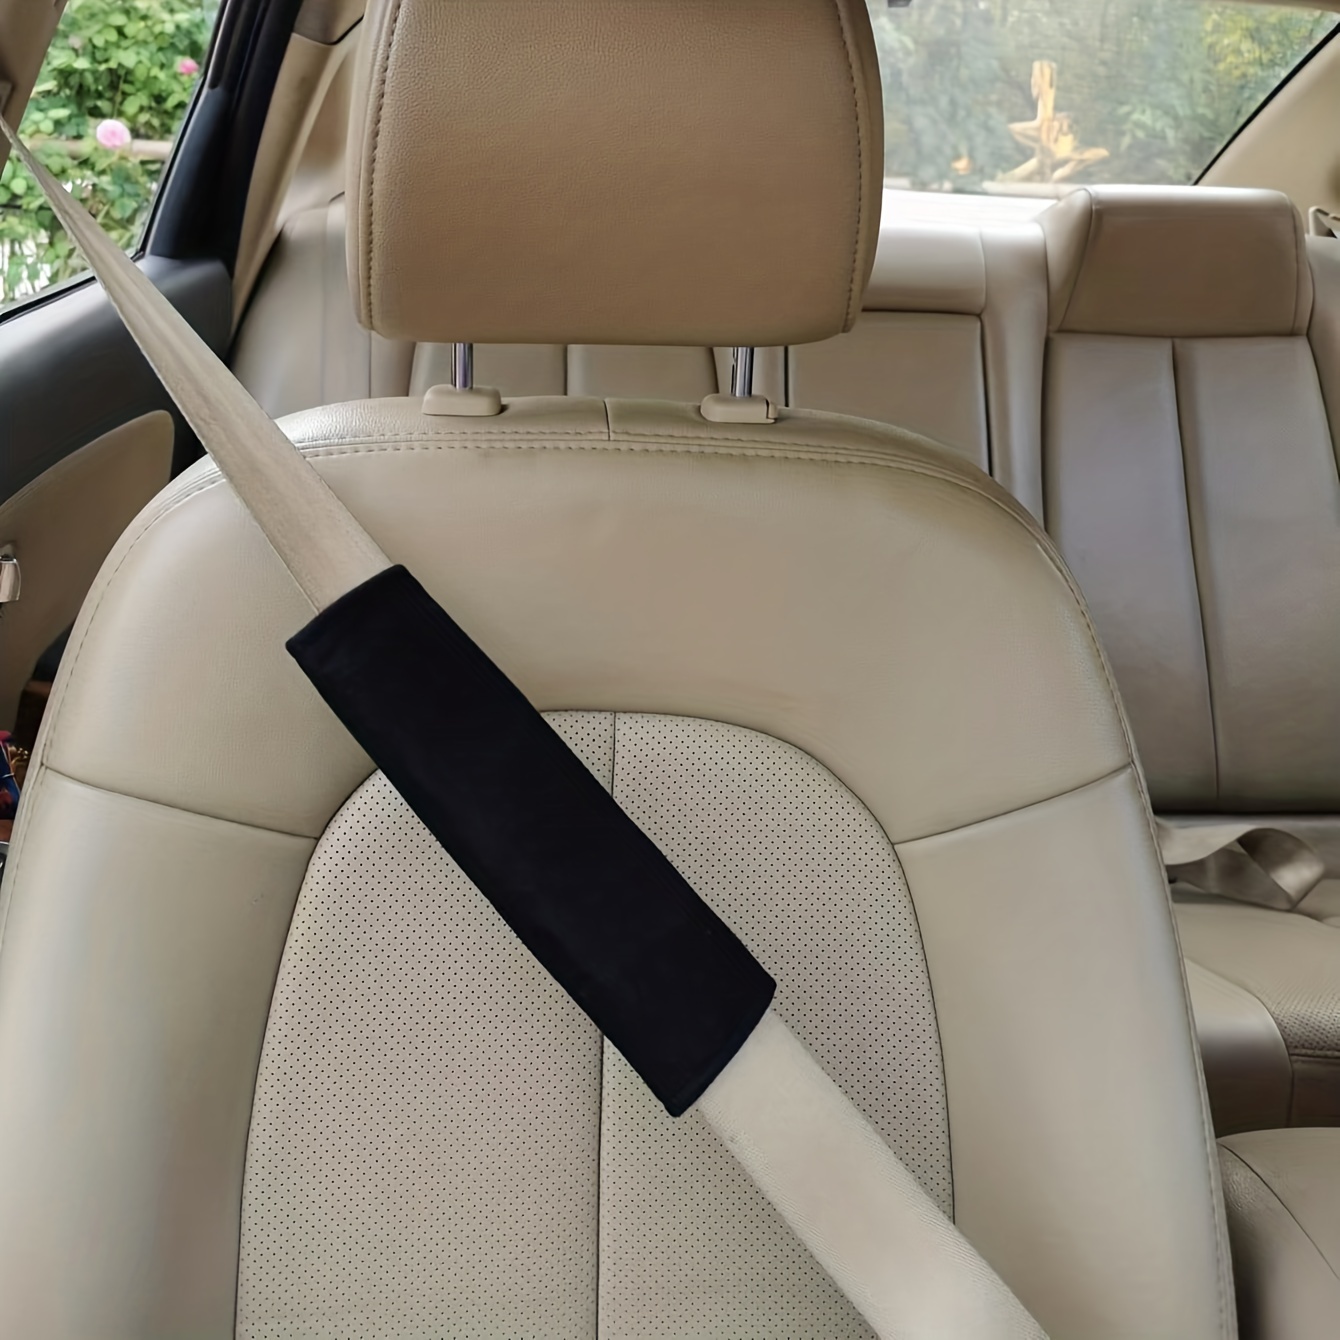 1/2 Stück Schnalle Autogurt Clip Autositz Gurtclip Für Automobil- sicherheitsgurt-verlängerung, Schauen Sie Sich Jetzt Die Heutigen Angebote  An